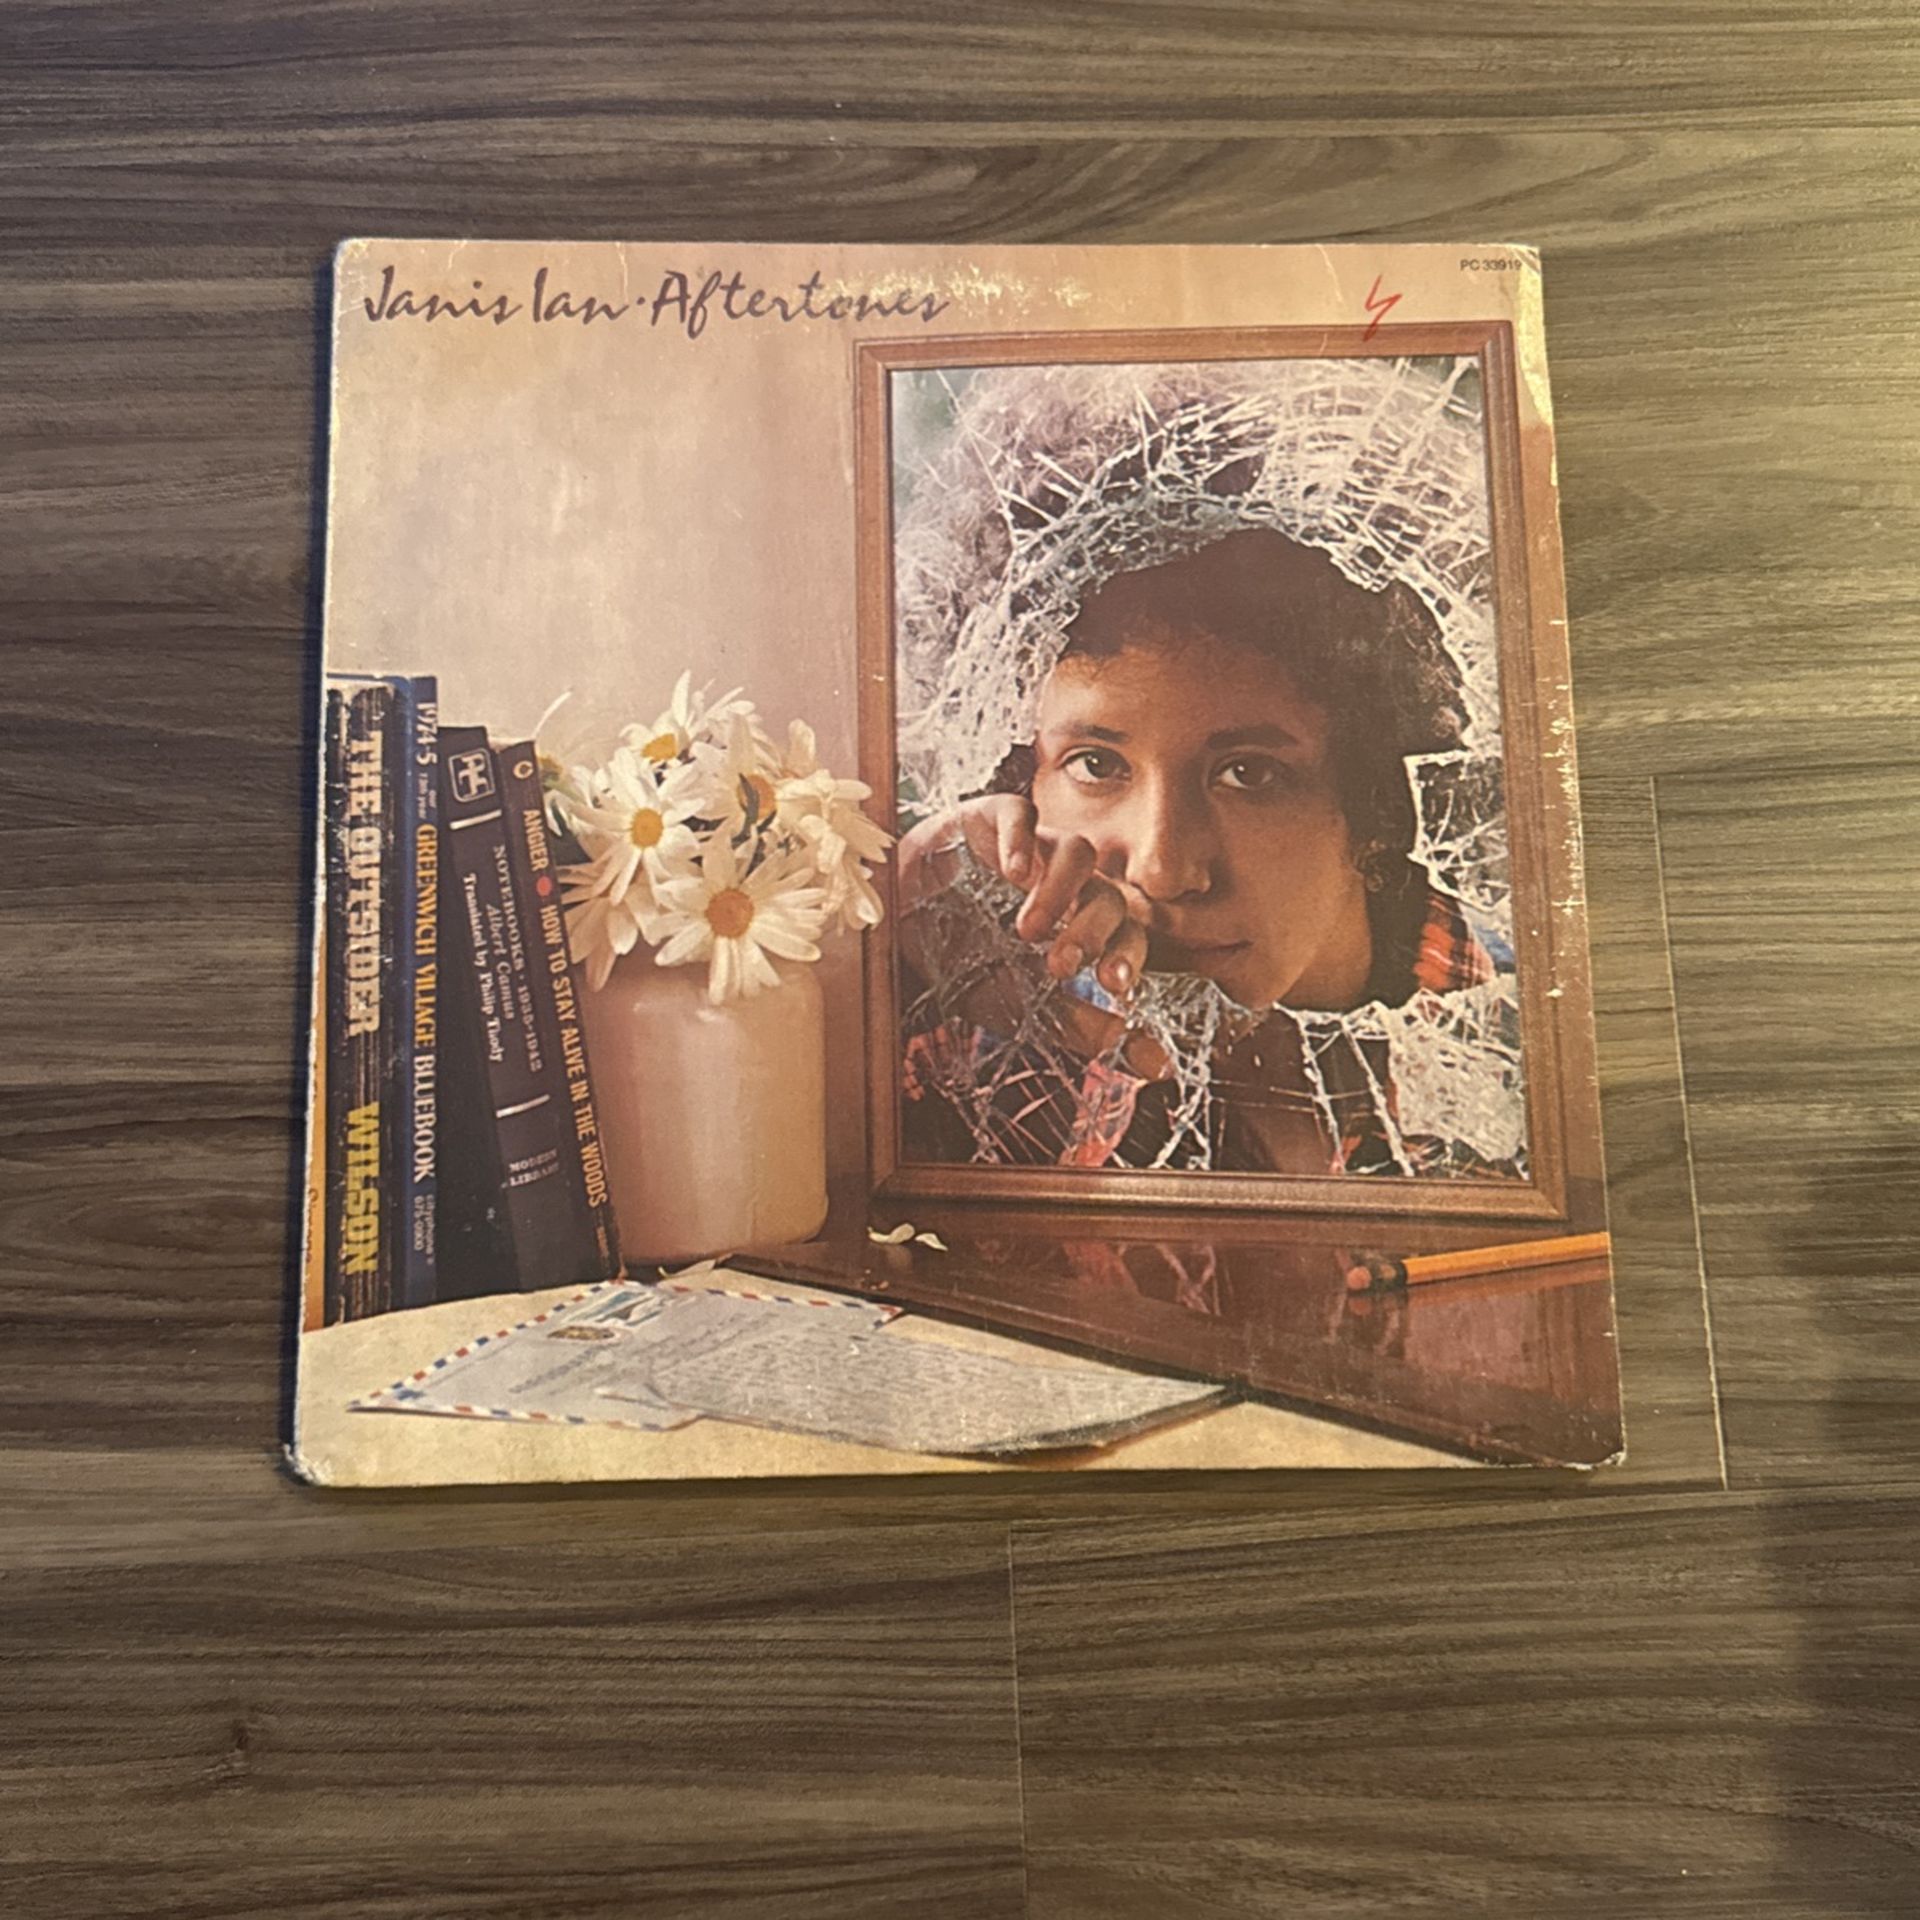 Janis Ian - Aftertones (Vinyl)